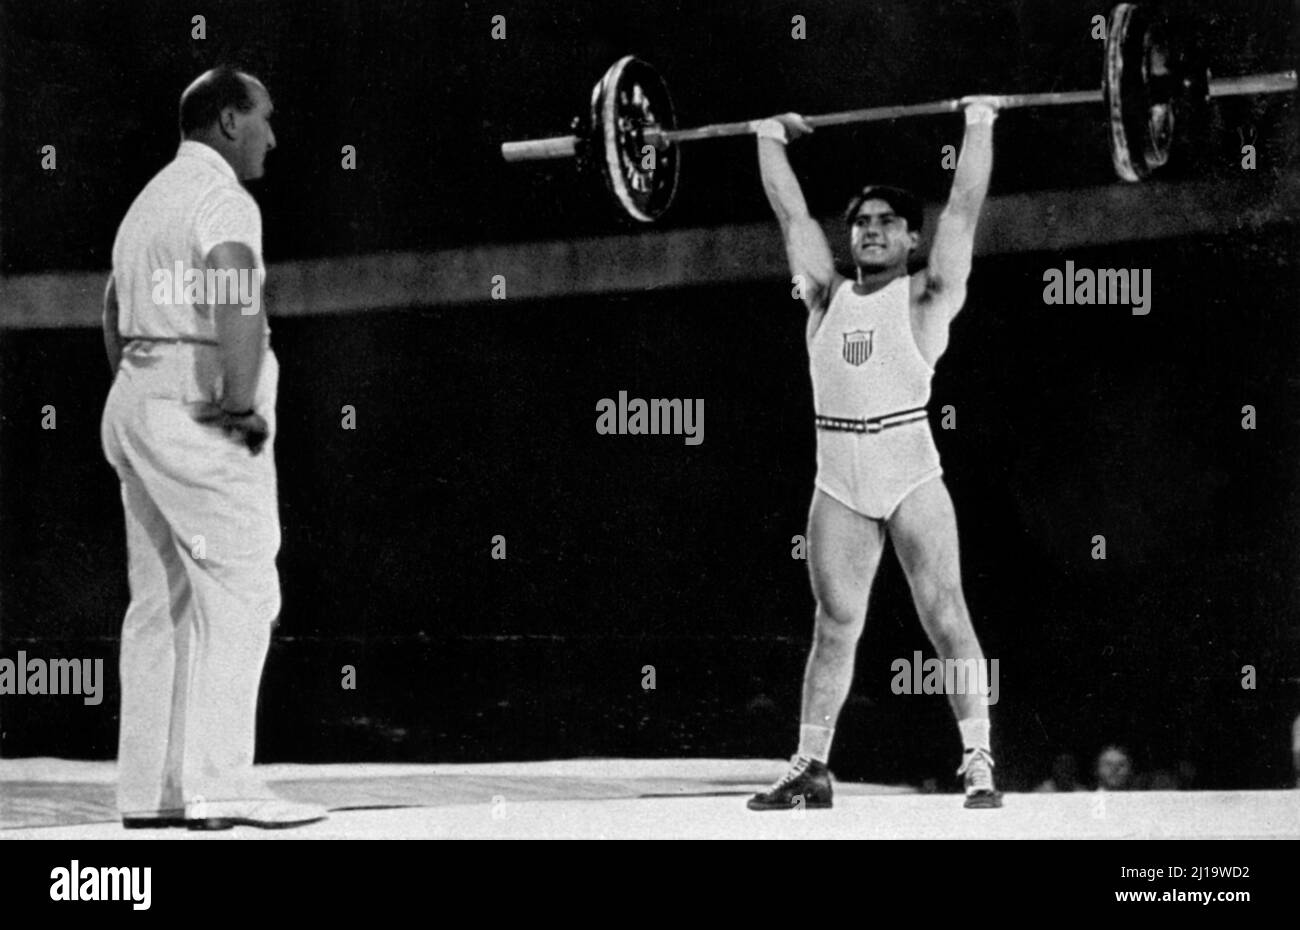 Il sollevamento pesi, campione olimpico di peso piuma Anthony Terrezzo, USA, ha alzato un totale di 312. 5 kg Foto Stock